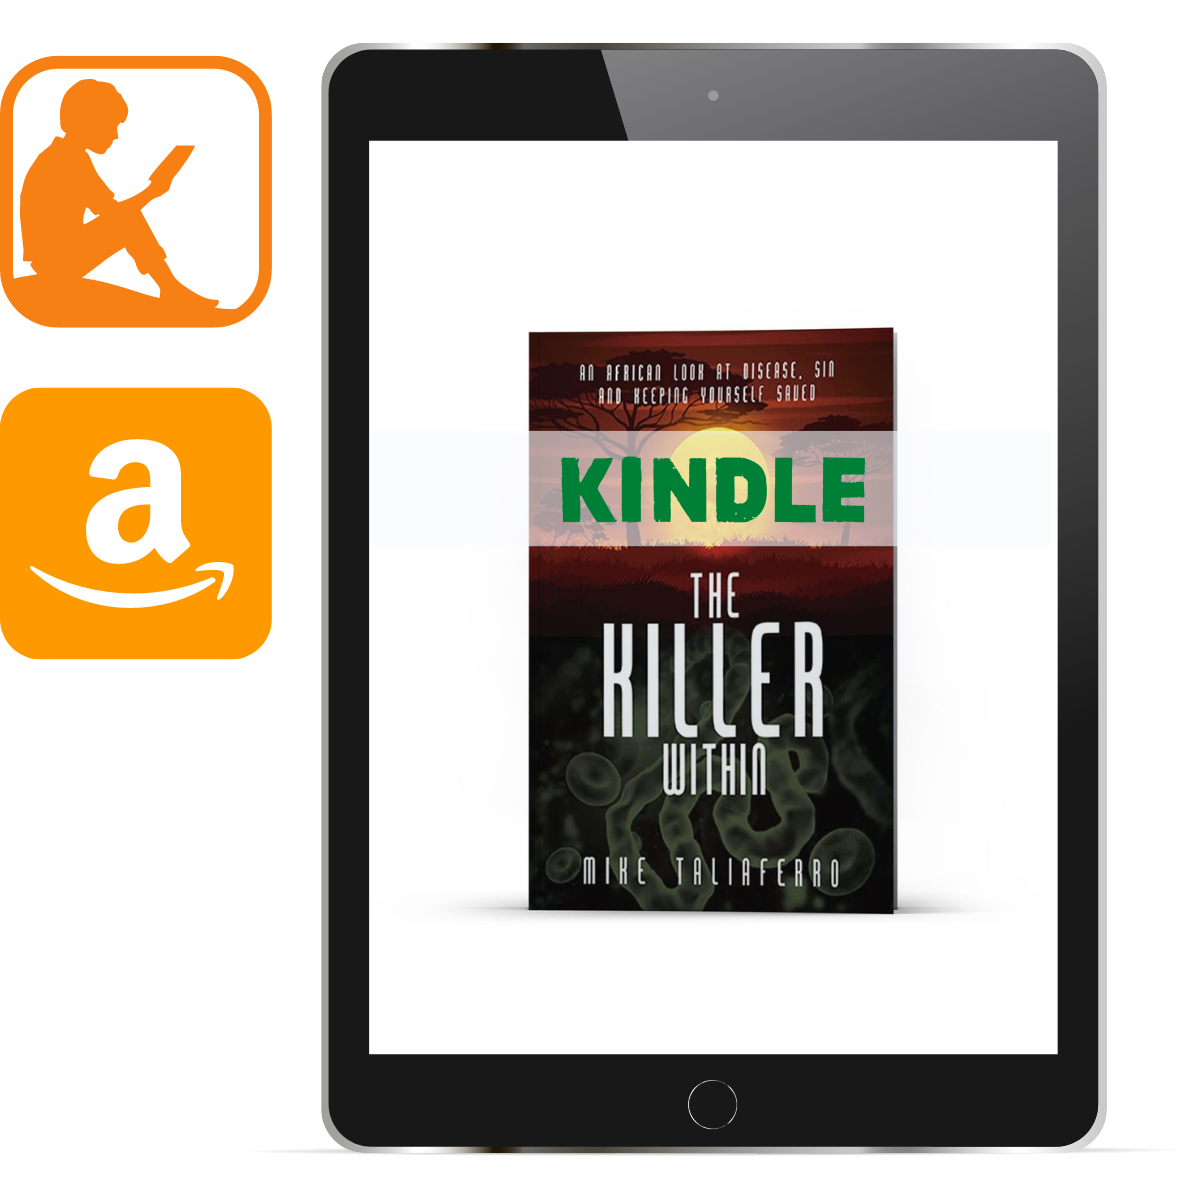 The Killer Within Kindle - Illumination Publishers